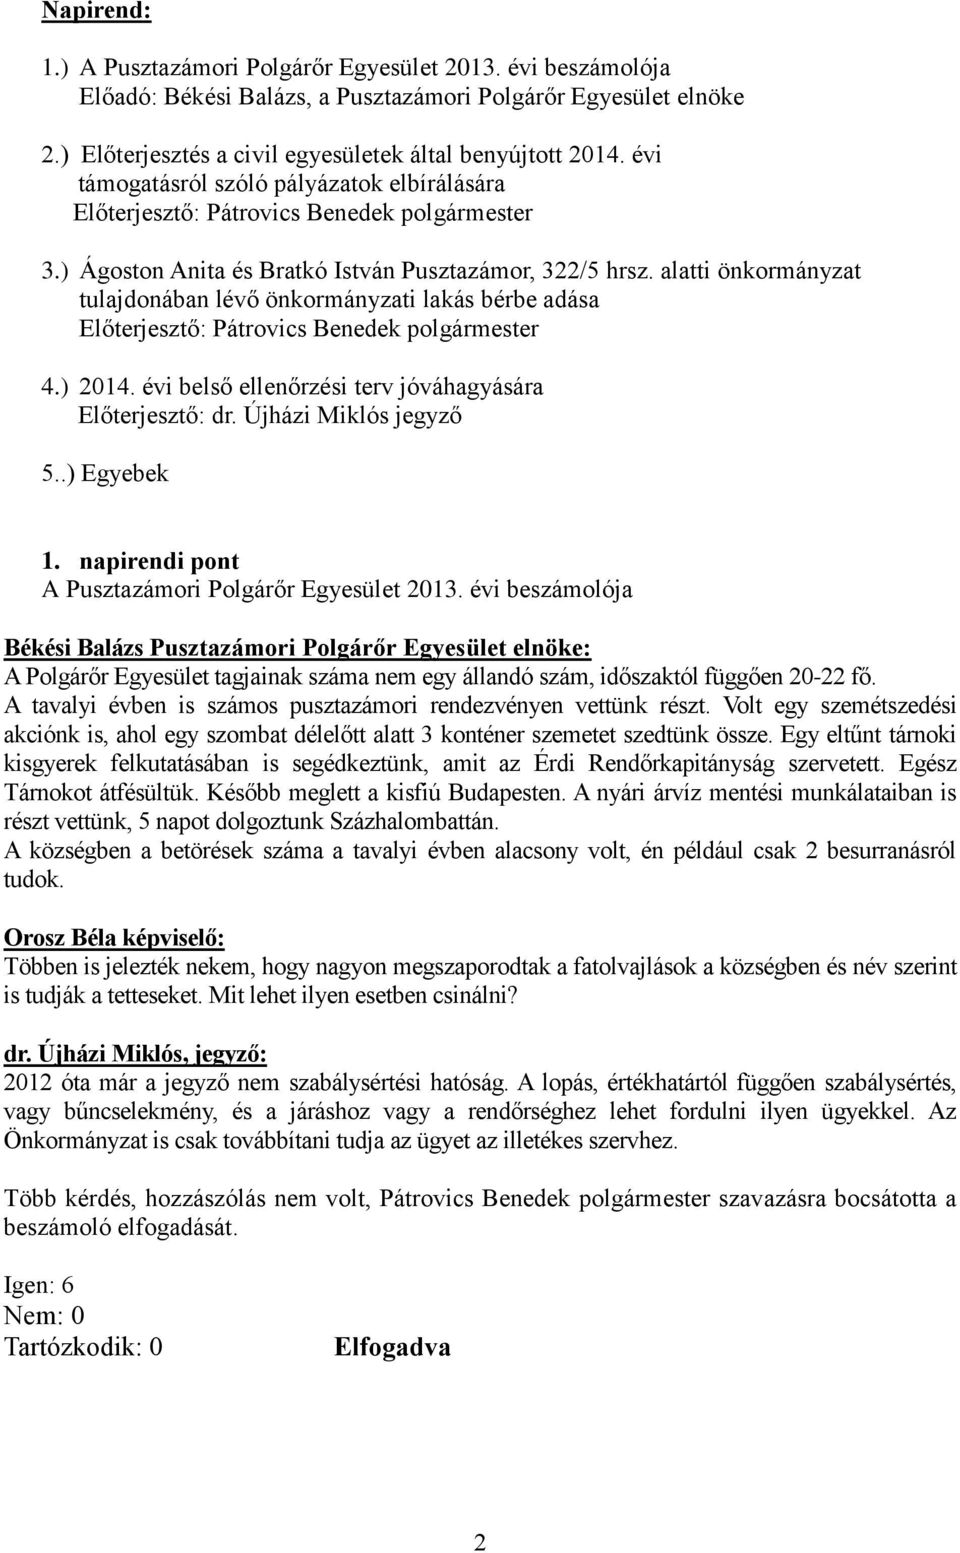 alatti önkormányzat tulajdonában lévő önkormányzati lakás bérbe adása Előterjesztő: Pátrovics Benedek polgármester 4.) 2014. évi belső ellenőrzési terv jóváhagyására Előterjesztő: dr.